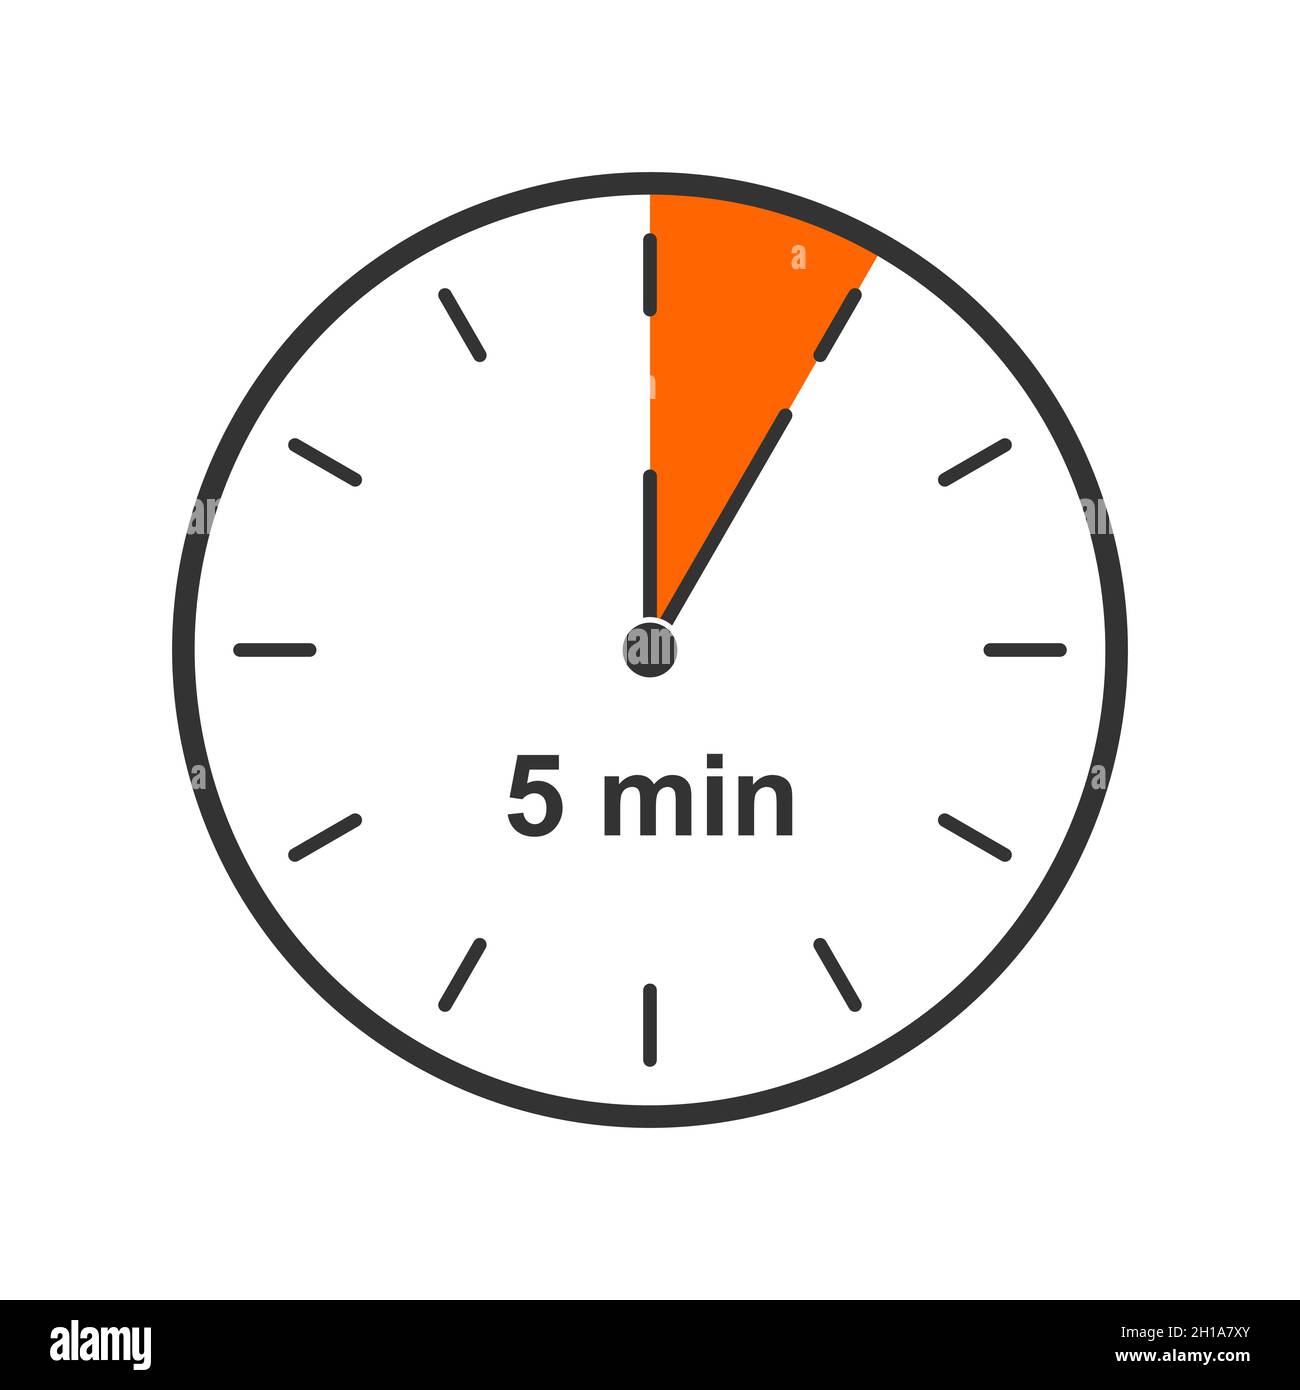 Icono de reloj con intervalo de tiempo de 5 minutos. Símbolo de  temporizador de cuenta atrás o cronómetro aislado sobre fondo blanco.  Elemento infográfico para cocinar o jugar al deporte. Ilustración de